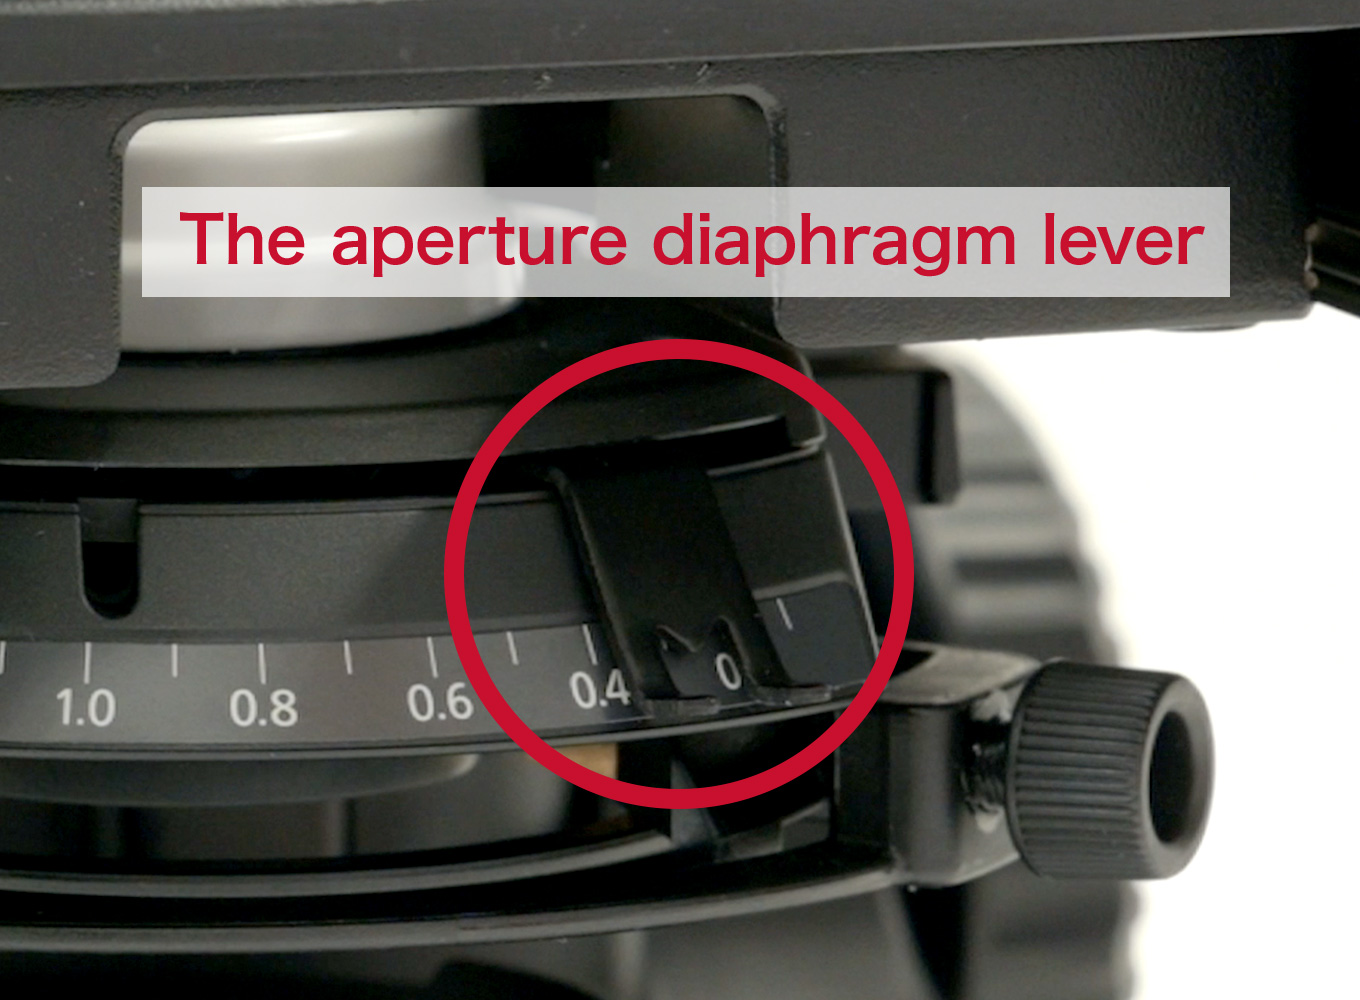 Adjust the aperture diaphragm lever